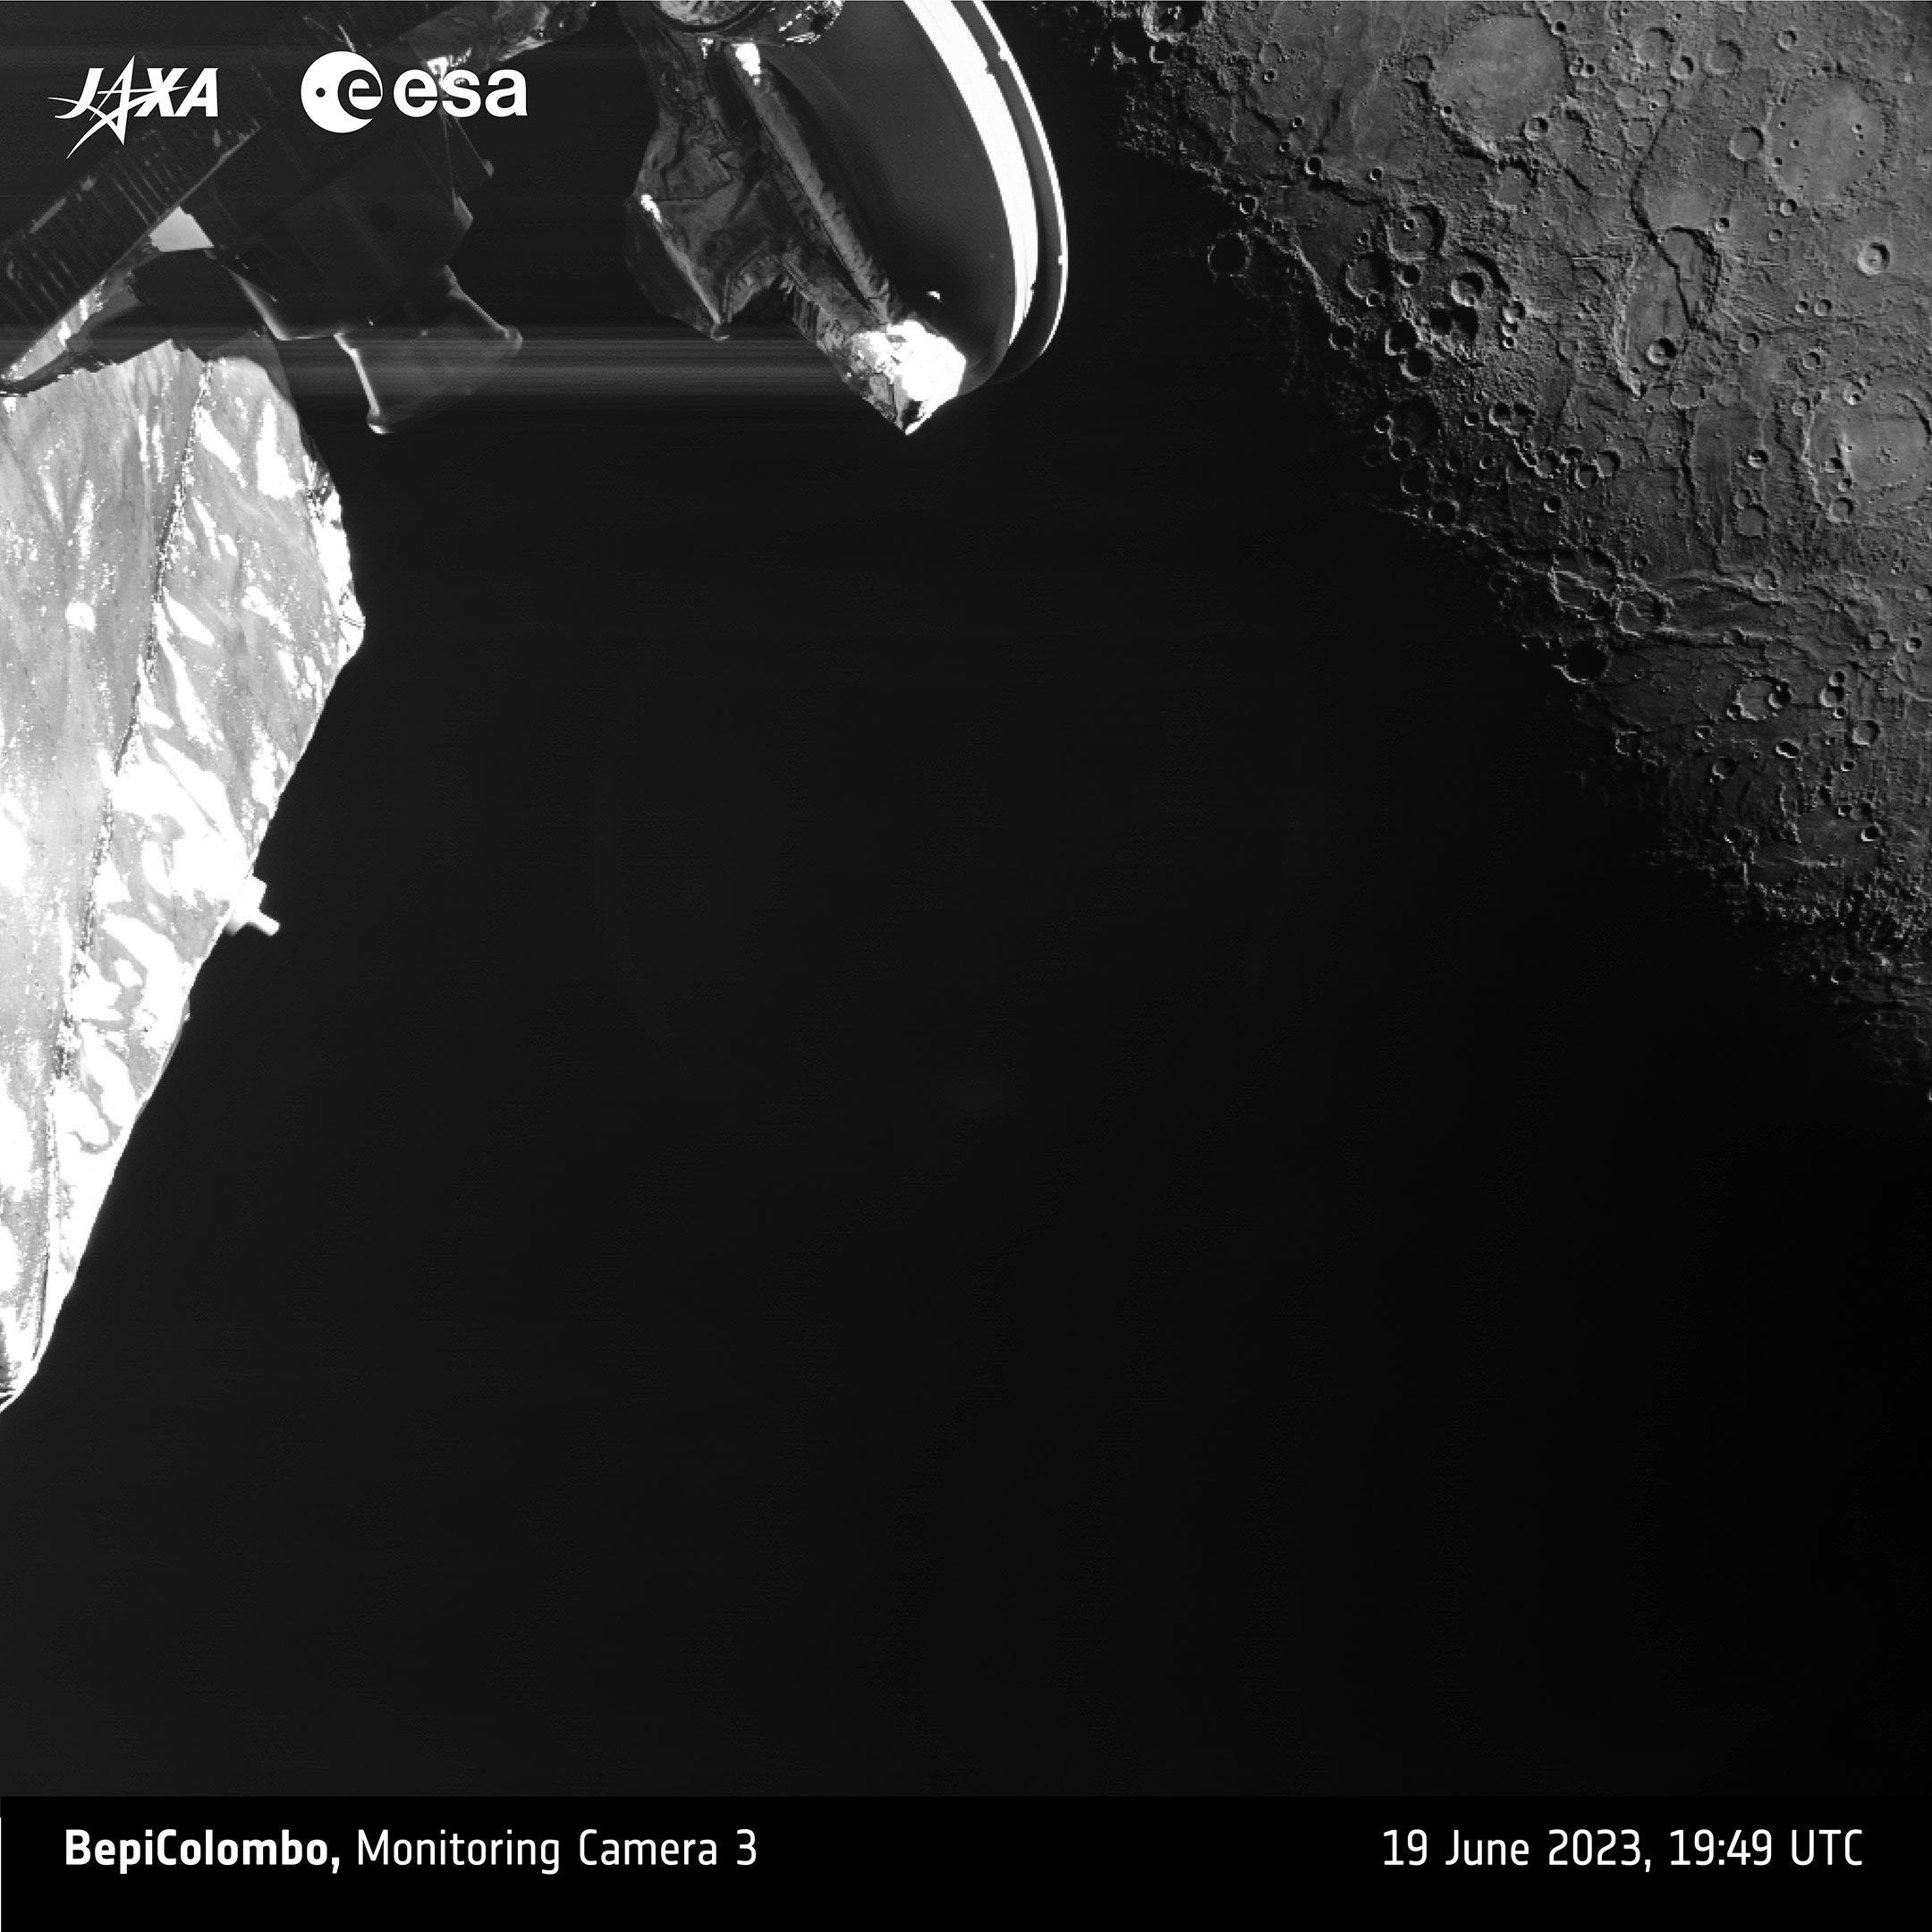 Снимок был сделан в 19:49 по Гринвичу камерой наблюдения 3я, когда космический аппарат находился примерно в 2536 км от поверхности планеты.